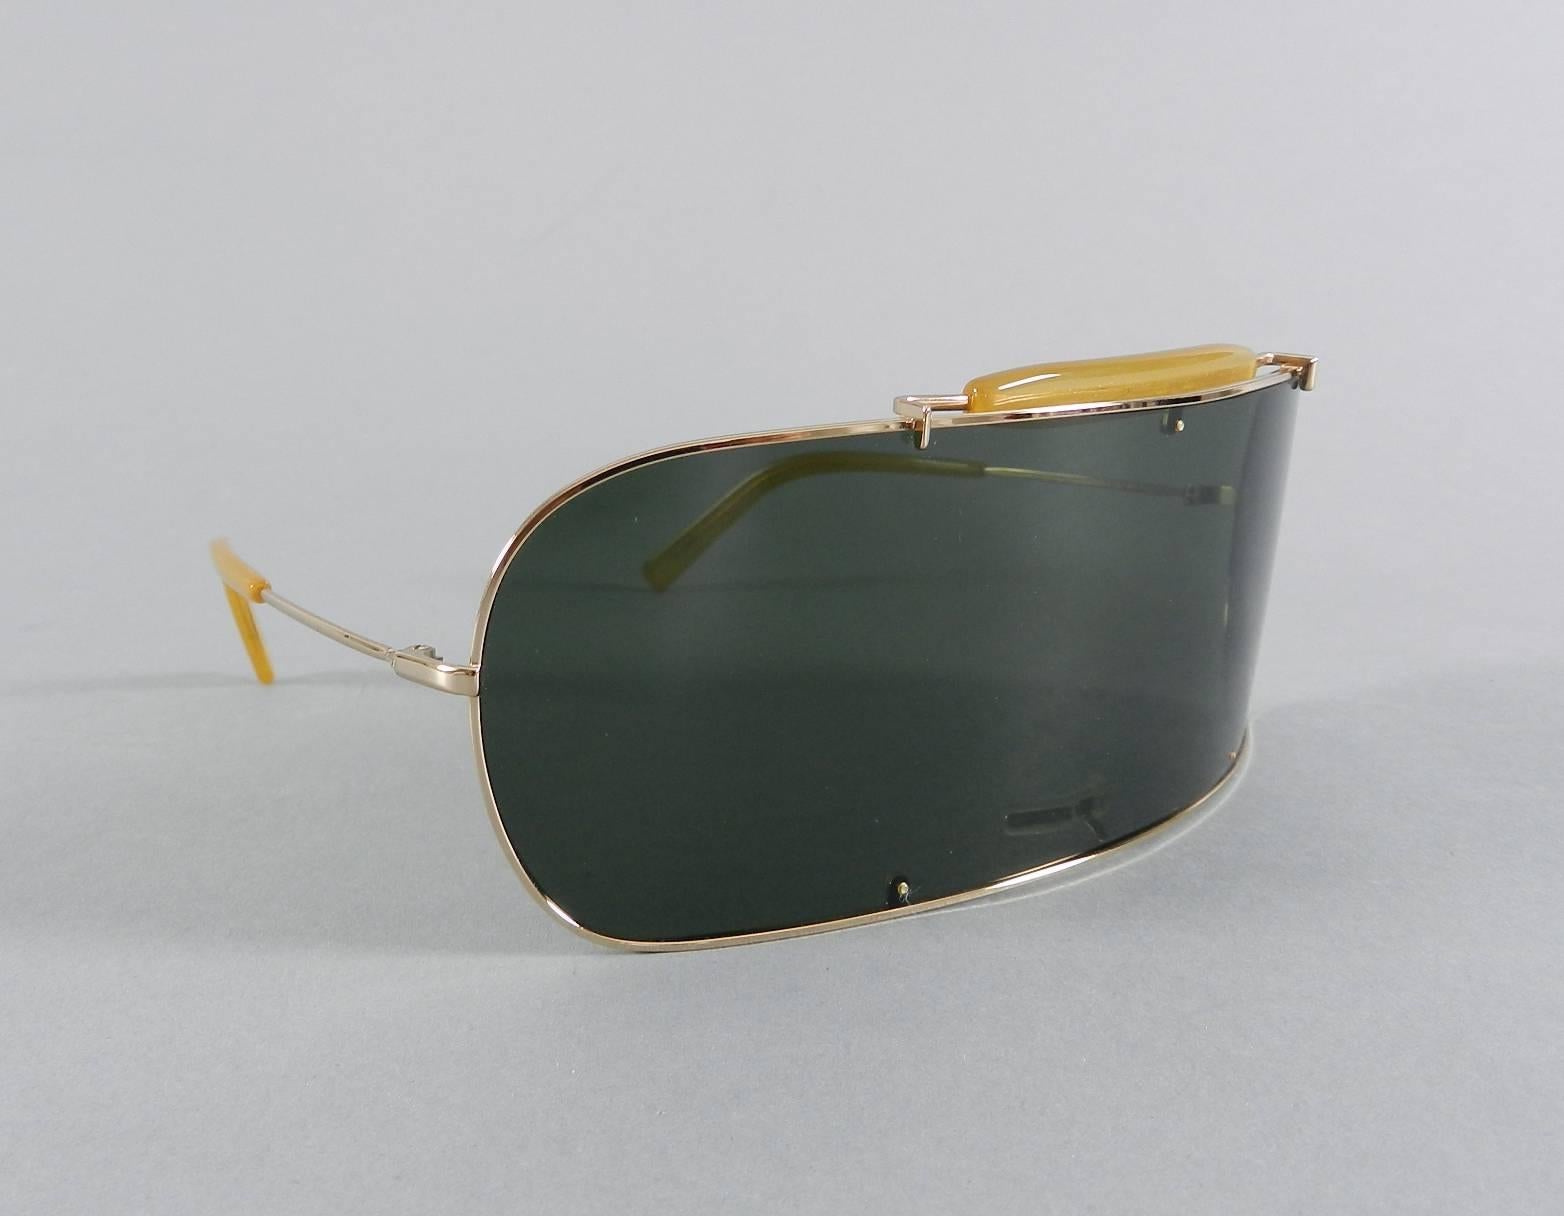 Black Maison Martin Margiela Visor Sunglasses in case